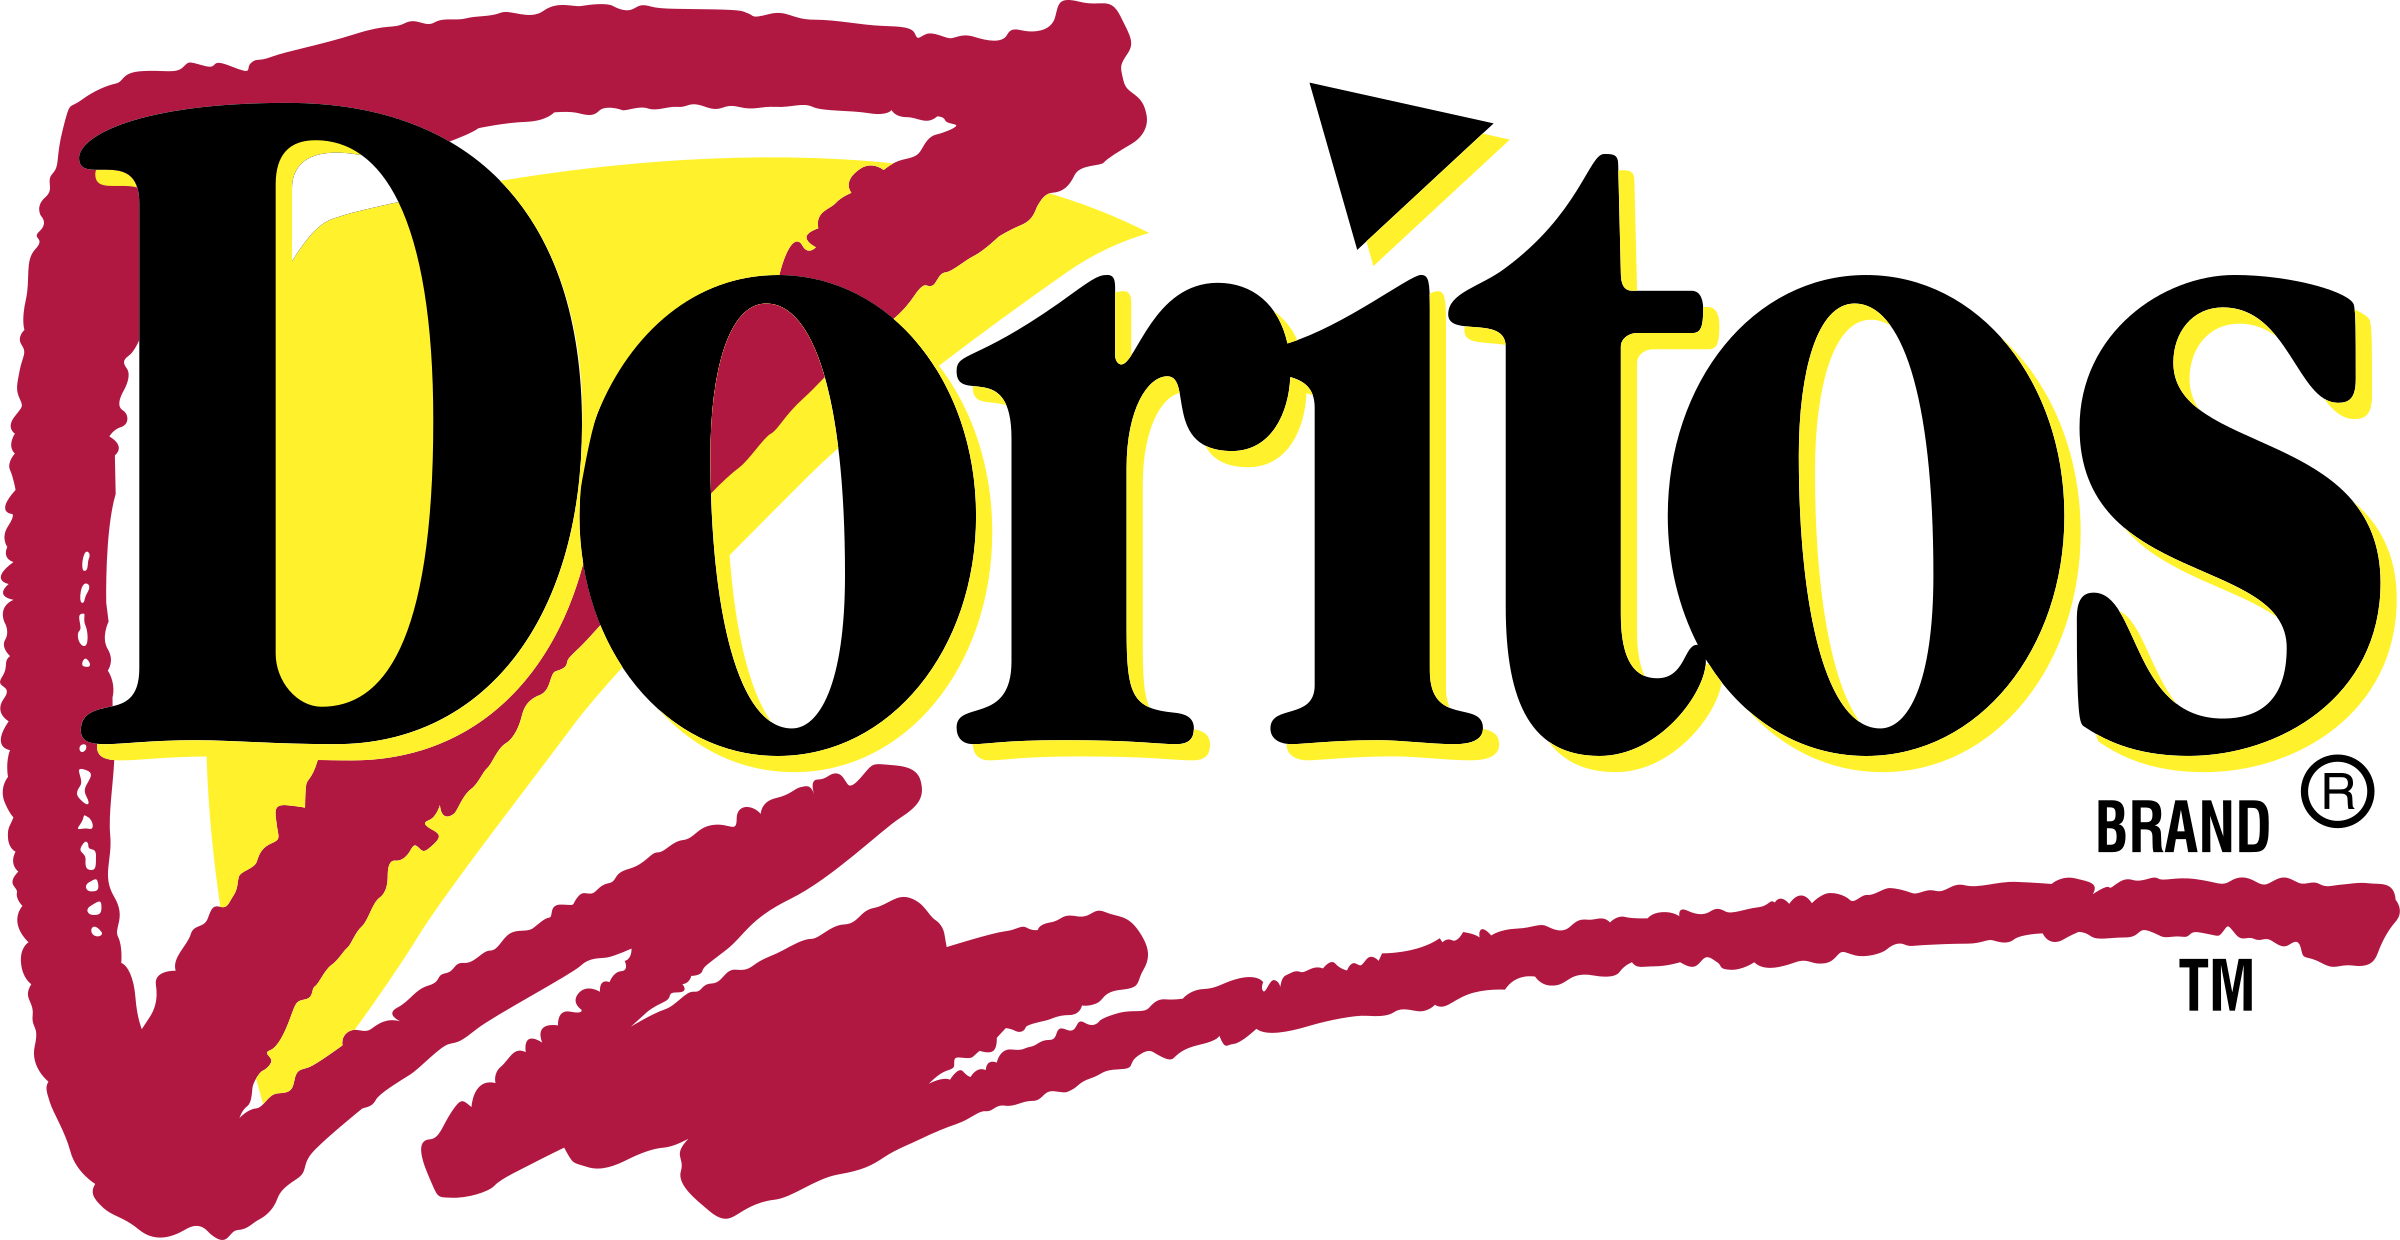 Doritos Logo PNG HD Quality